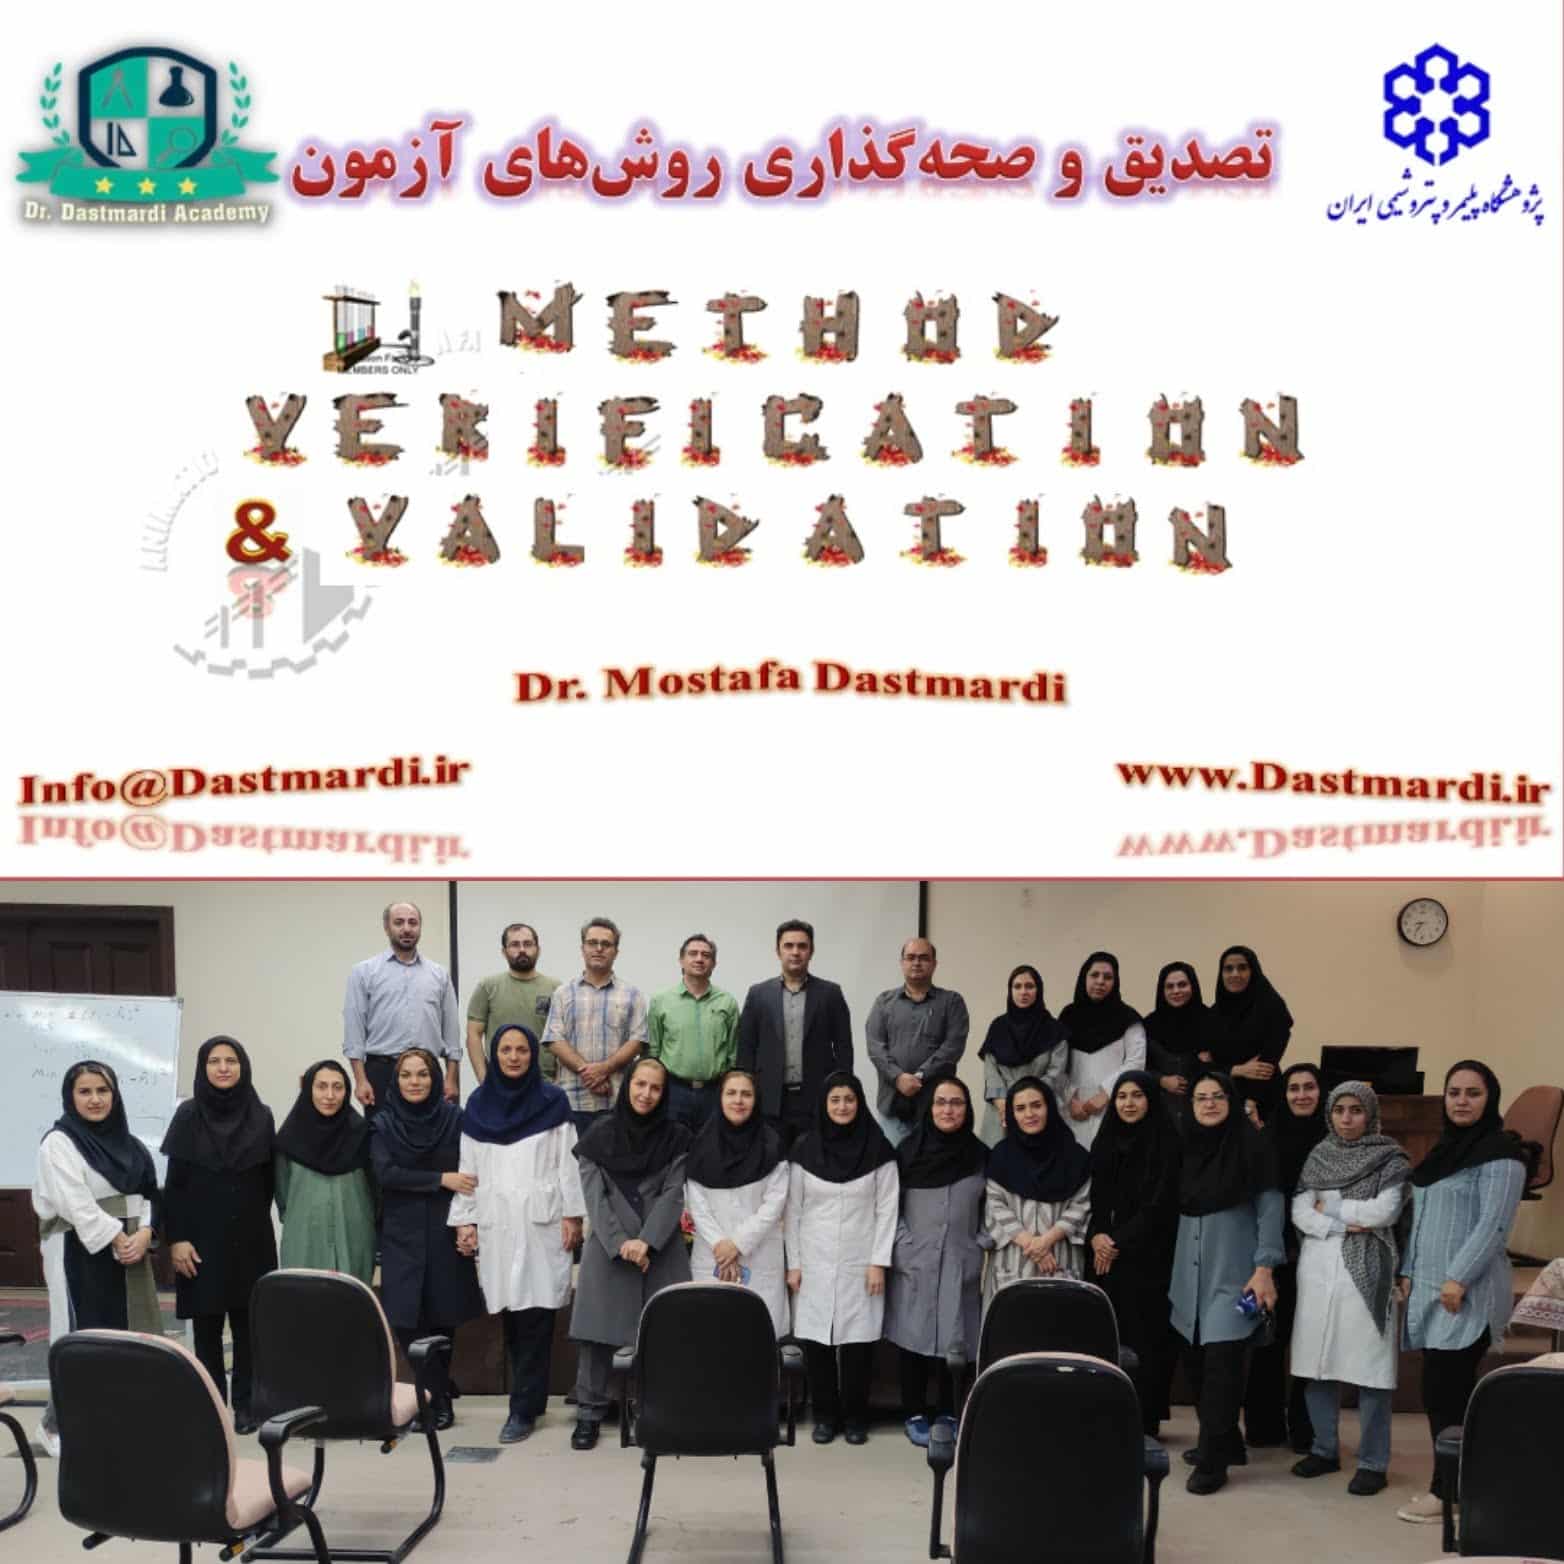 برگزاری دوره آموزشی تصدیق و صحه گذاری روش های آزمون در پژوهشگاه پلیمر و پتروشیمی ایران